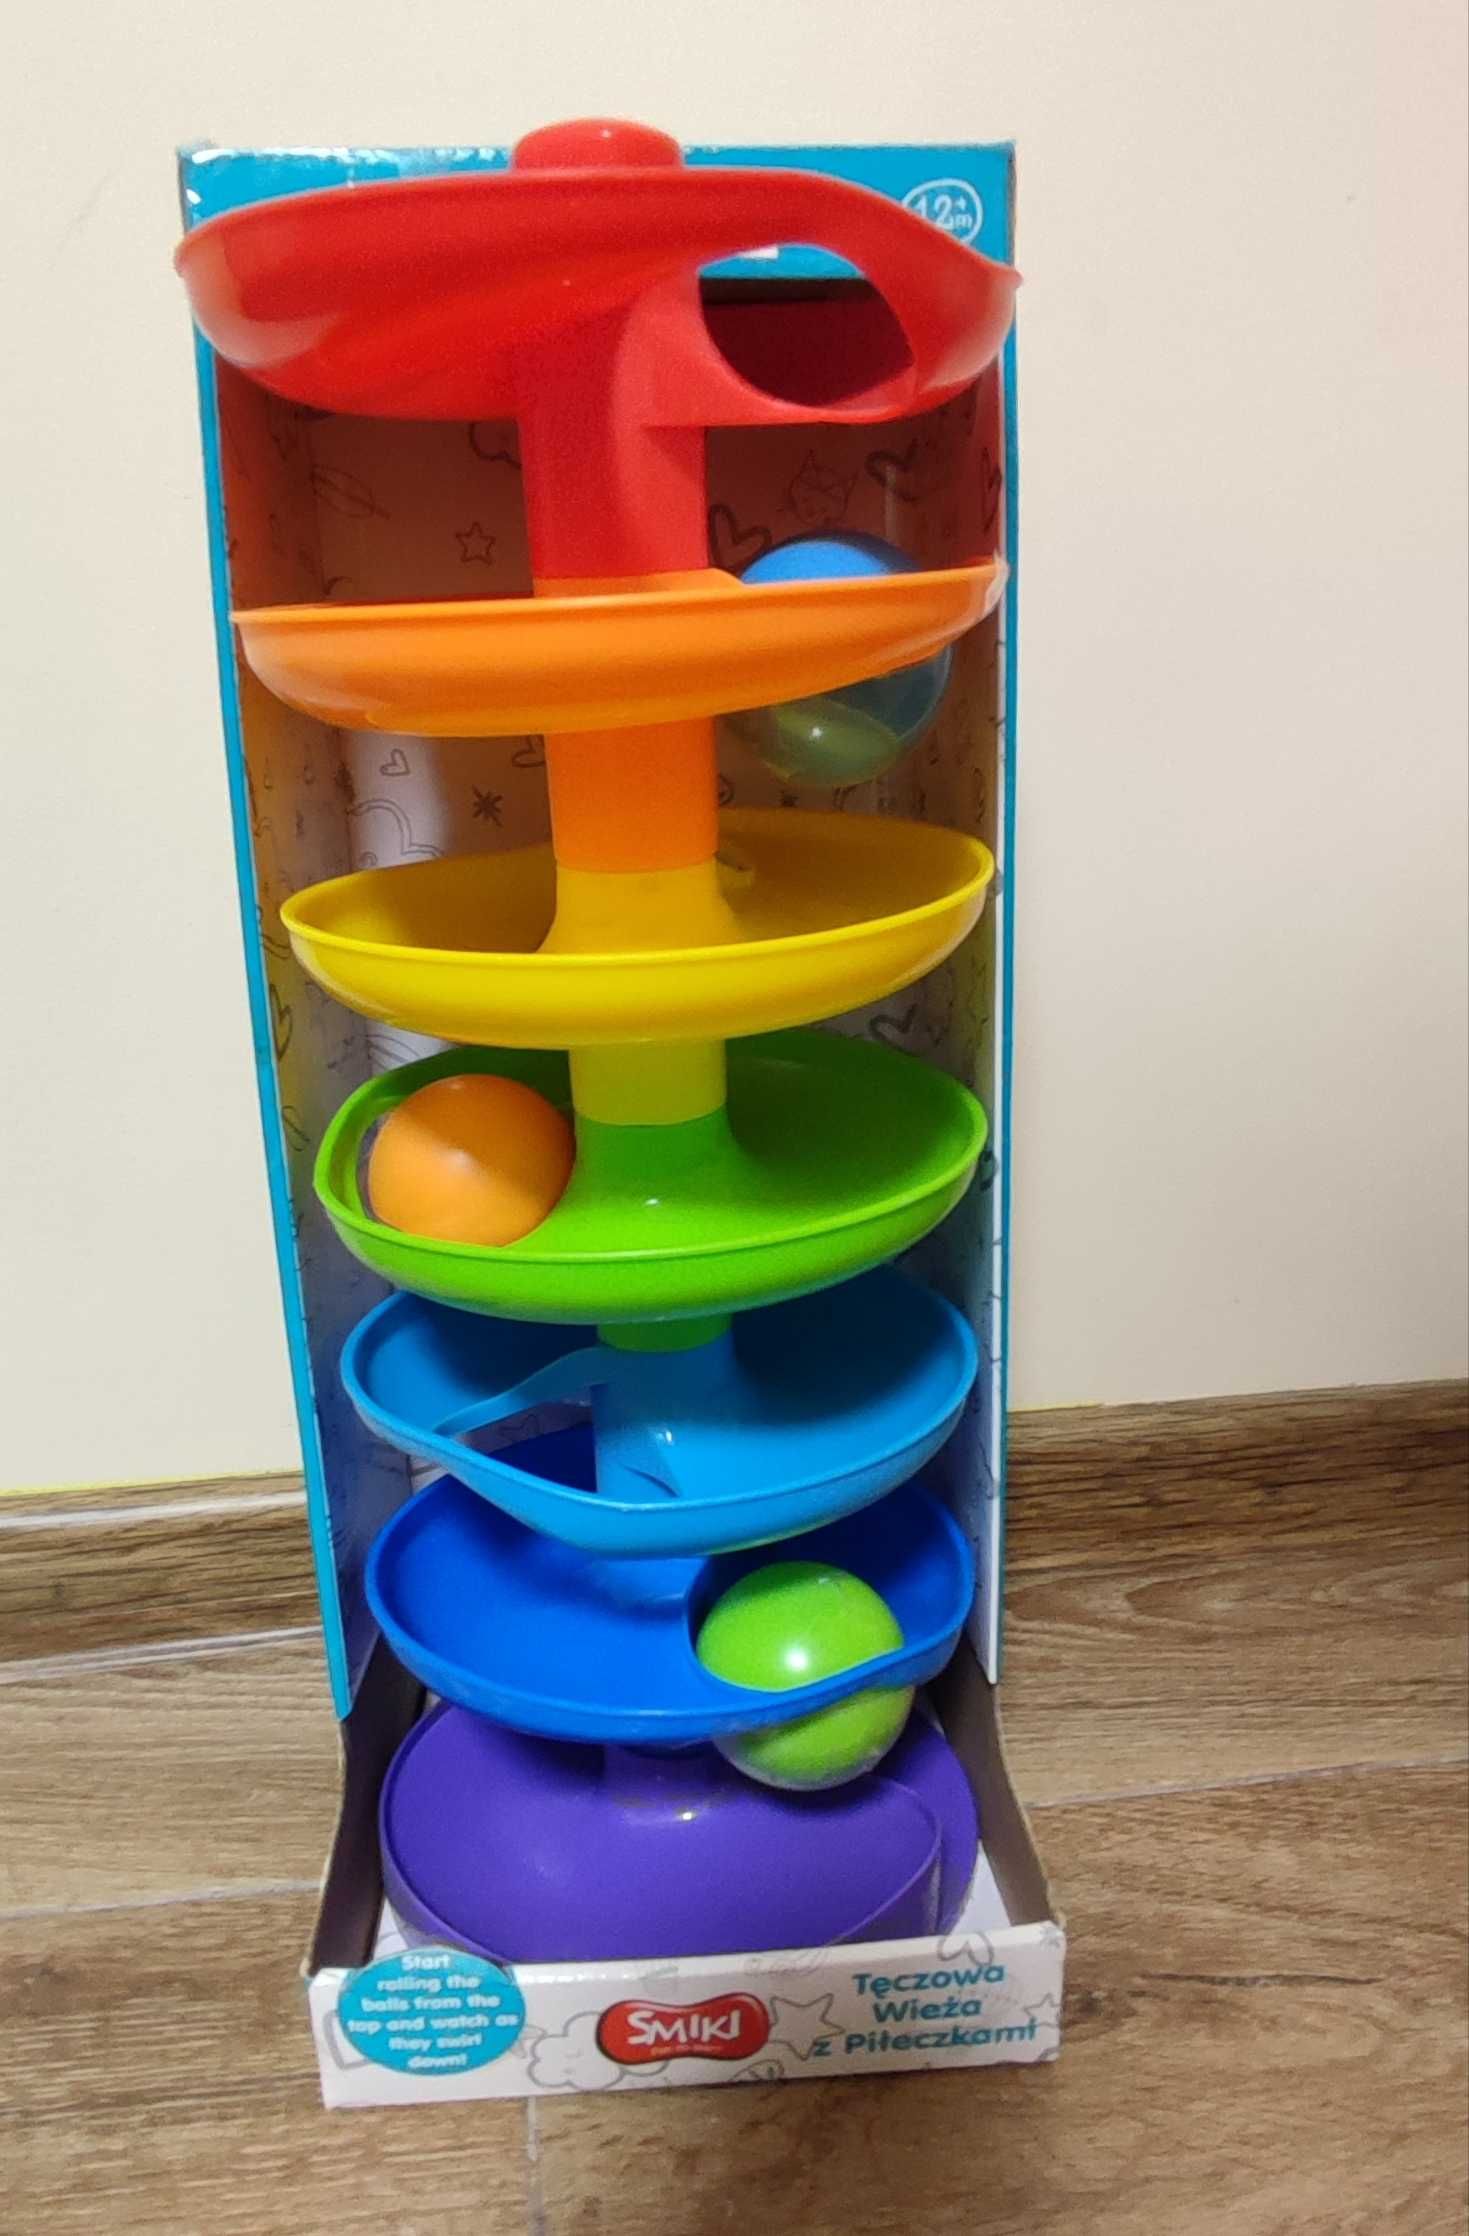 Zabawka tęczowa wieża/zjeżdżalnia z 3 piłeczkami Smiki